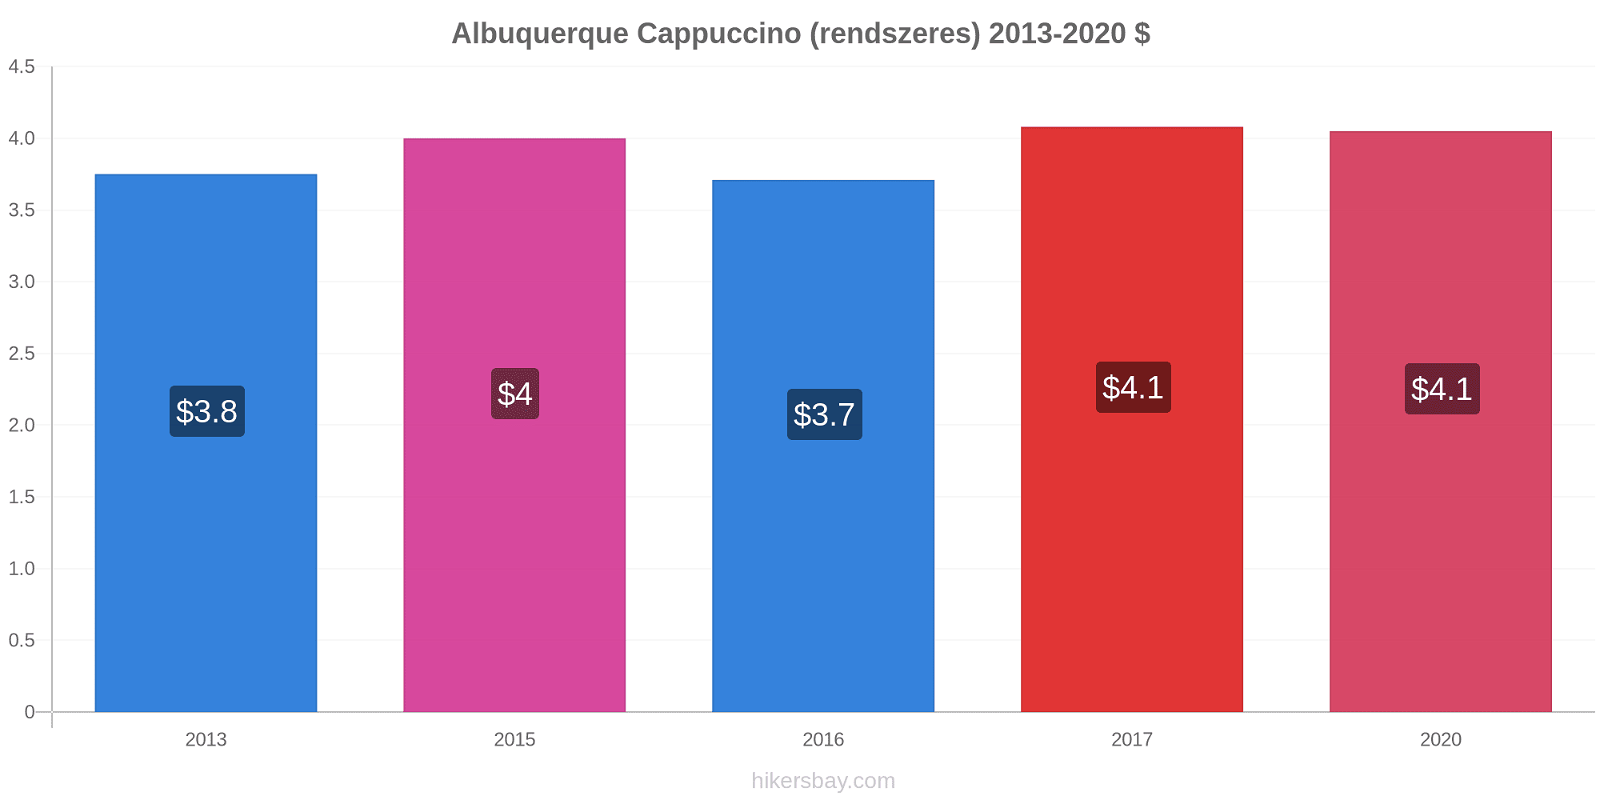 Albuquerque árváltozások Cappuccino (rendszeres) hikersbay.com